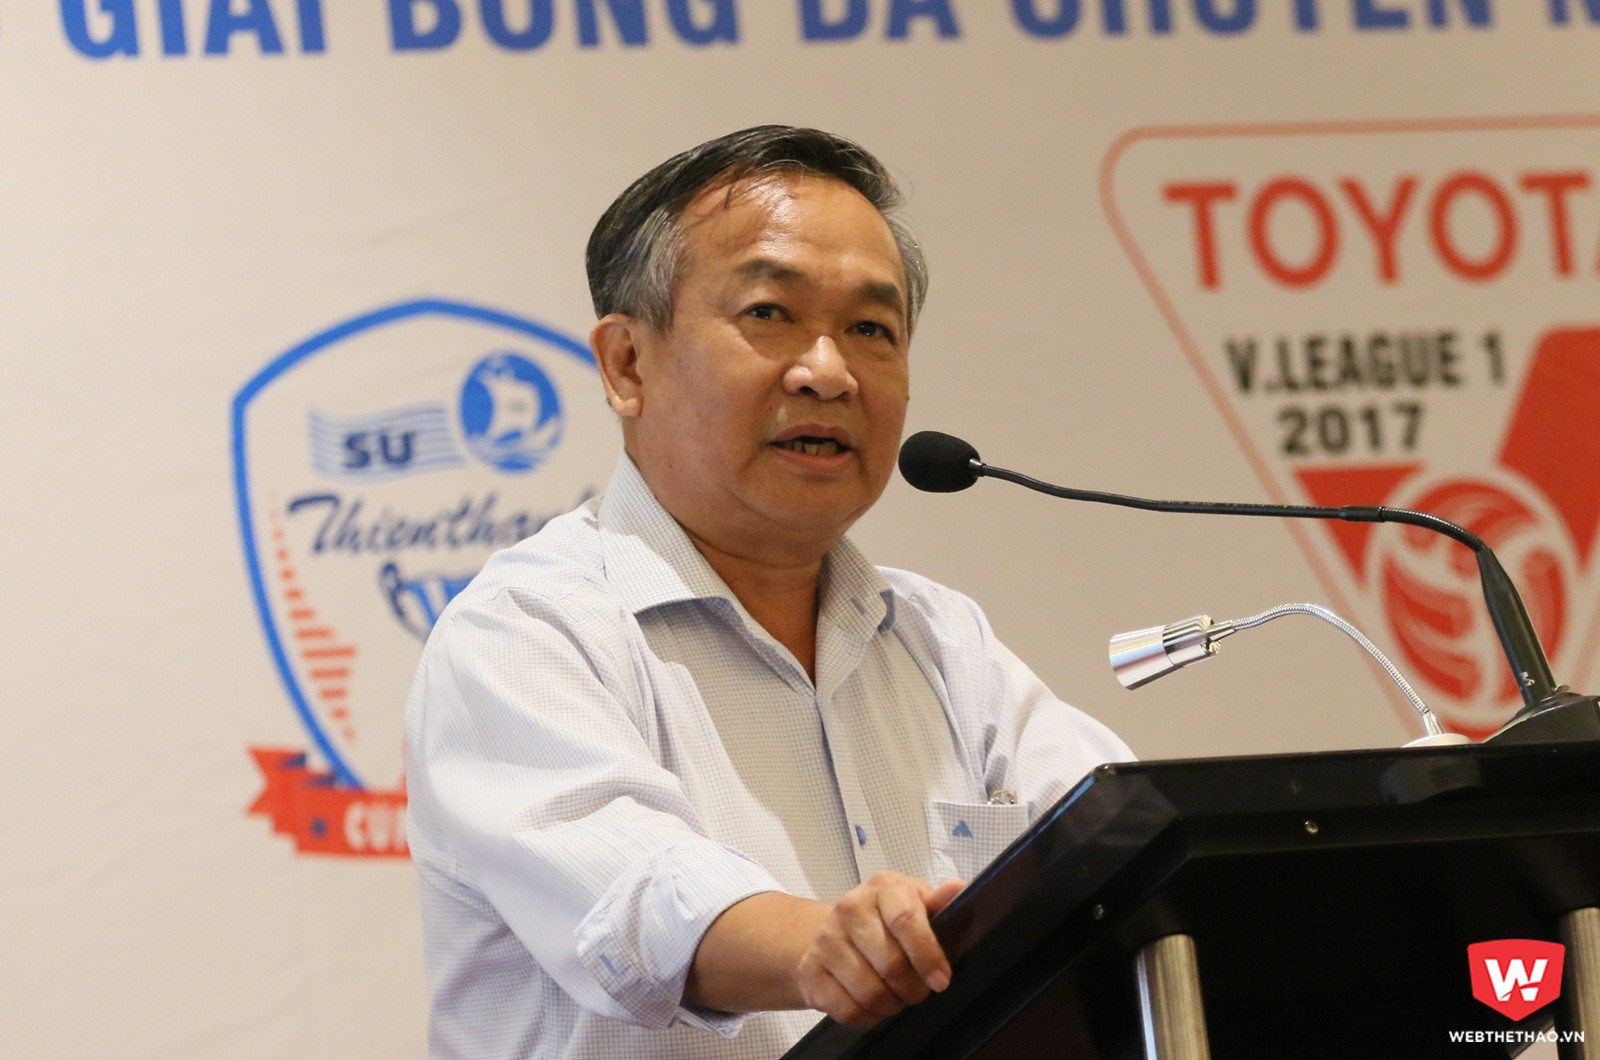 Ông Phạm Văn Tuấn - Phó tổng cục trưởng Tổng cục Thể dục thể thao phát biểu. Ảnh: Quang Thịnh.